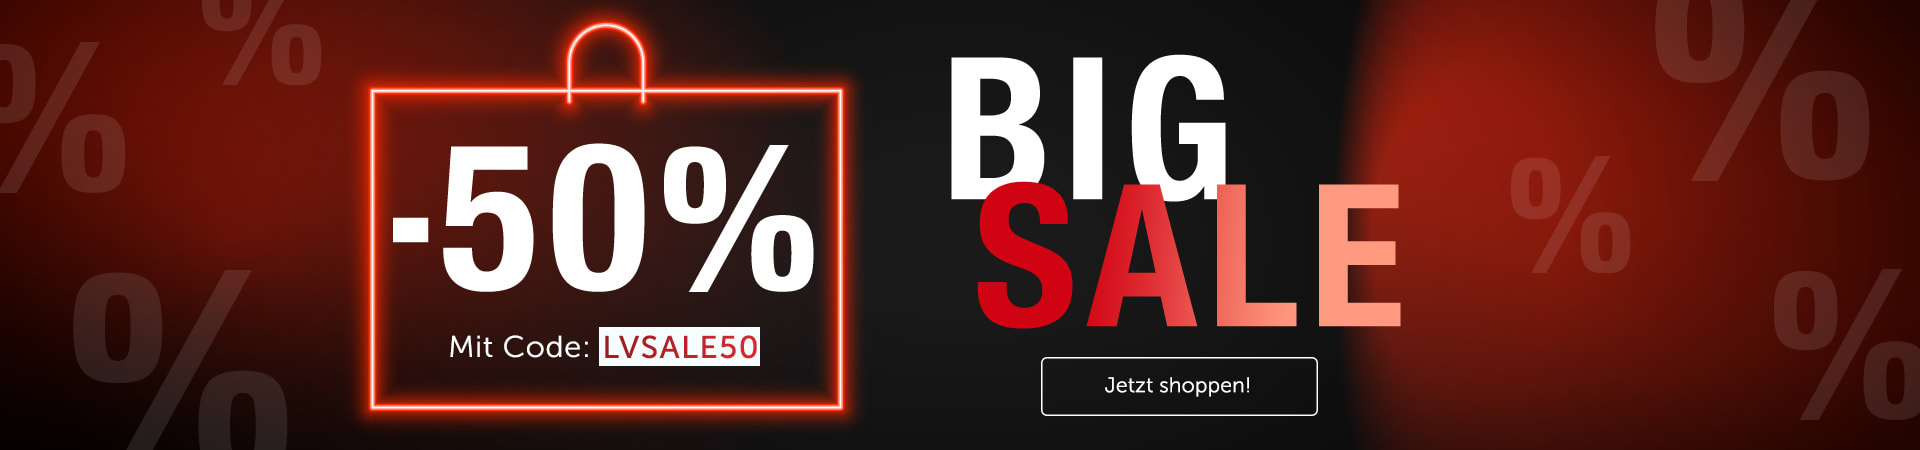 Mach mit bei den BIG SALE Shopping Days & sichere dir unschlagbare 50% Rabatt!